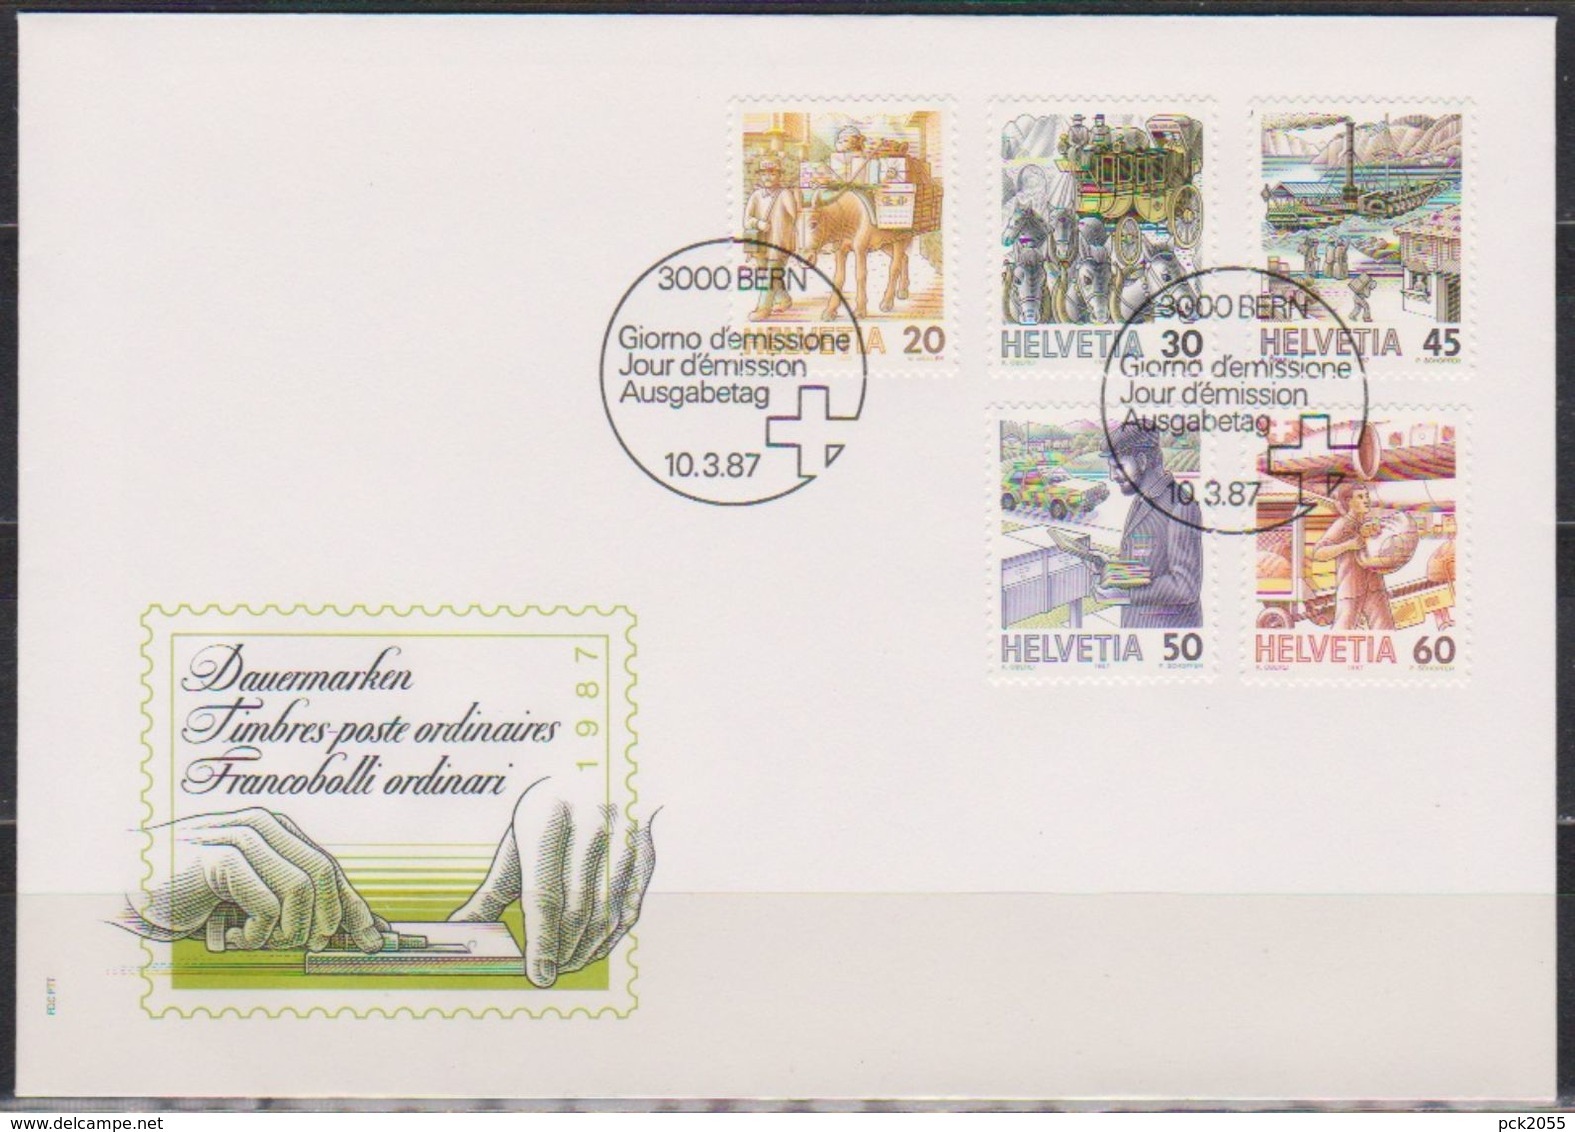 Schweiz FDC 1987 Nr.1340 - 1344 Postbeförderung ( D 5796 ) Günstige Versandkosten - FDC